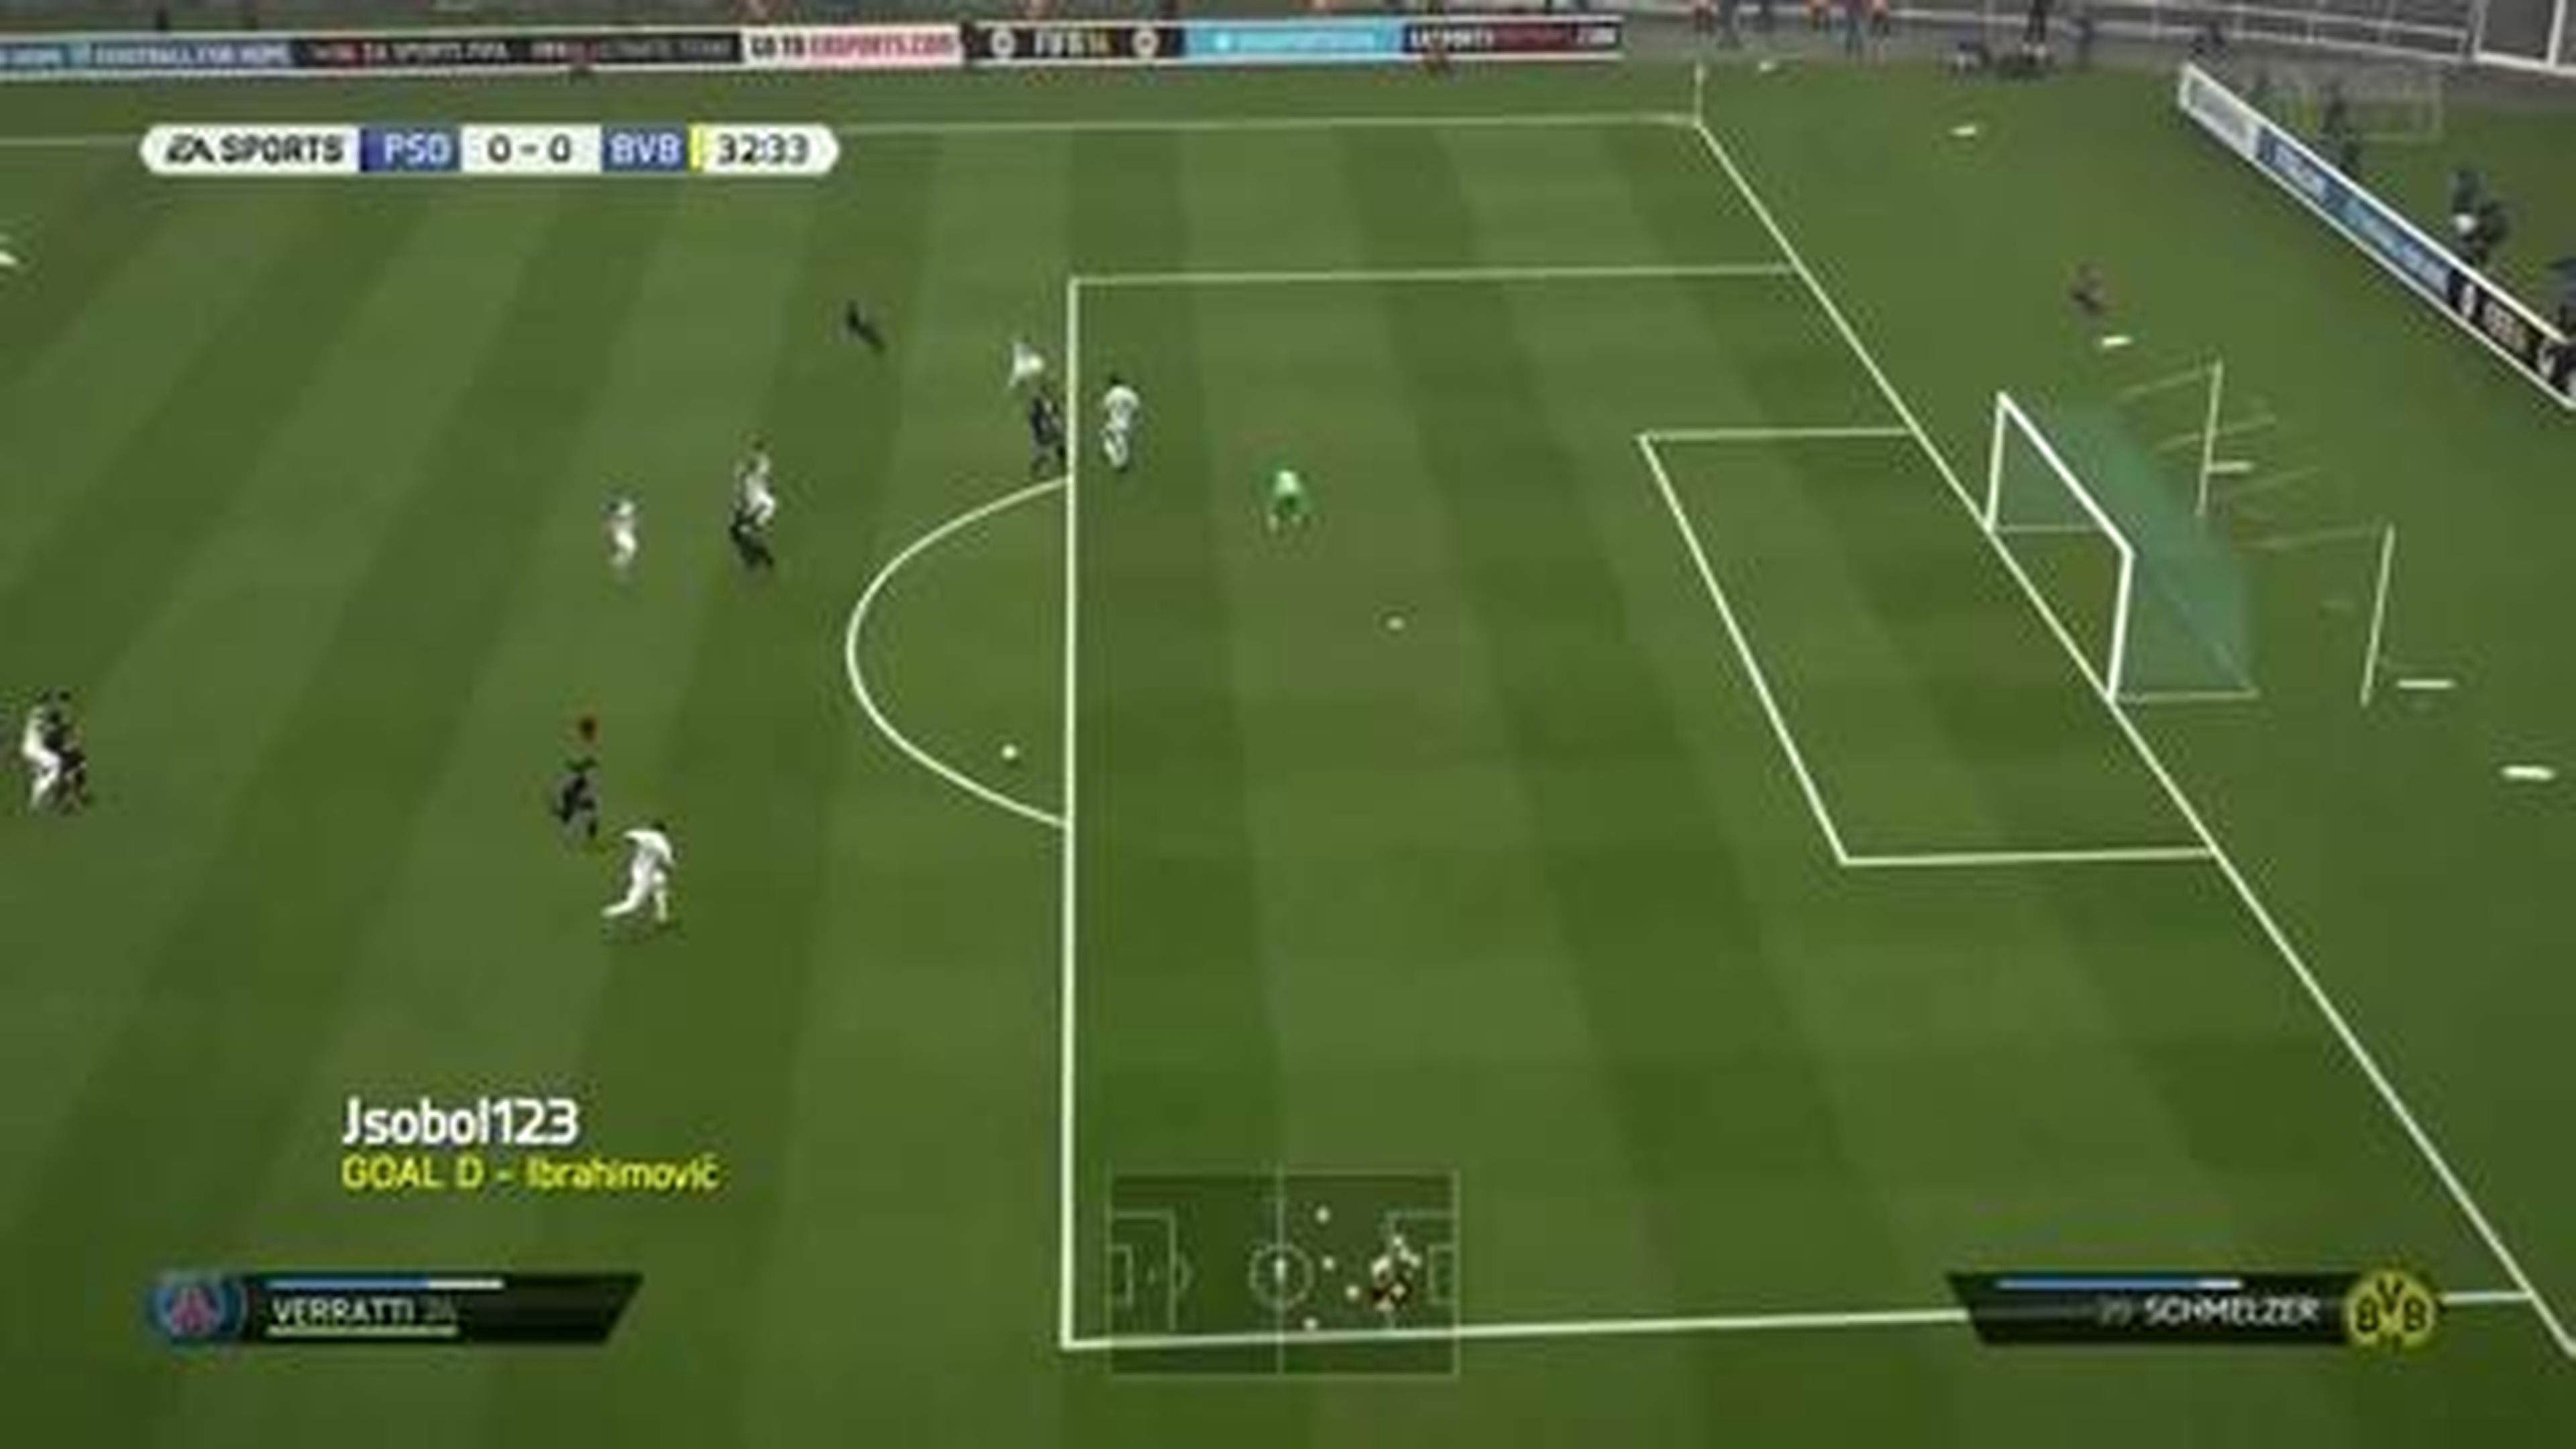 FIFA 14 - Best Goals of the Week - Round 24